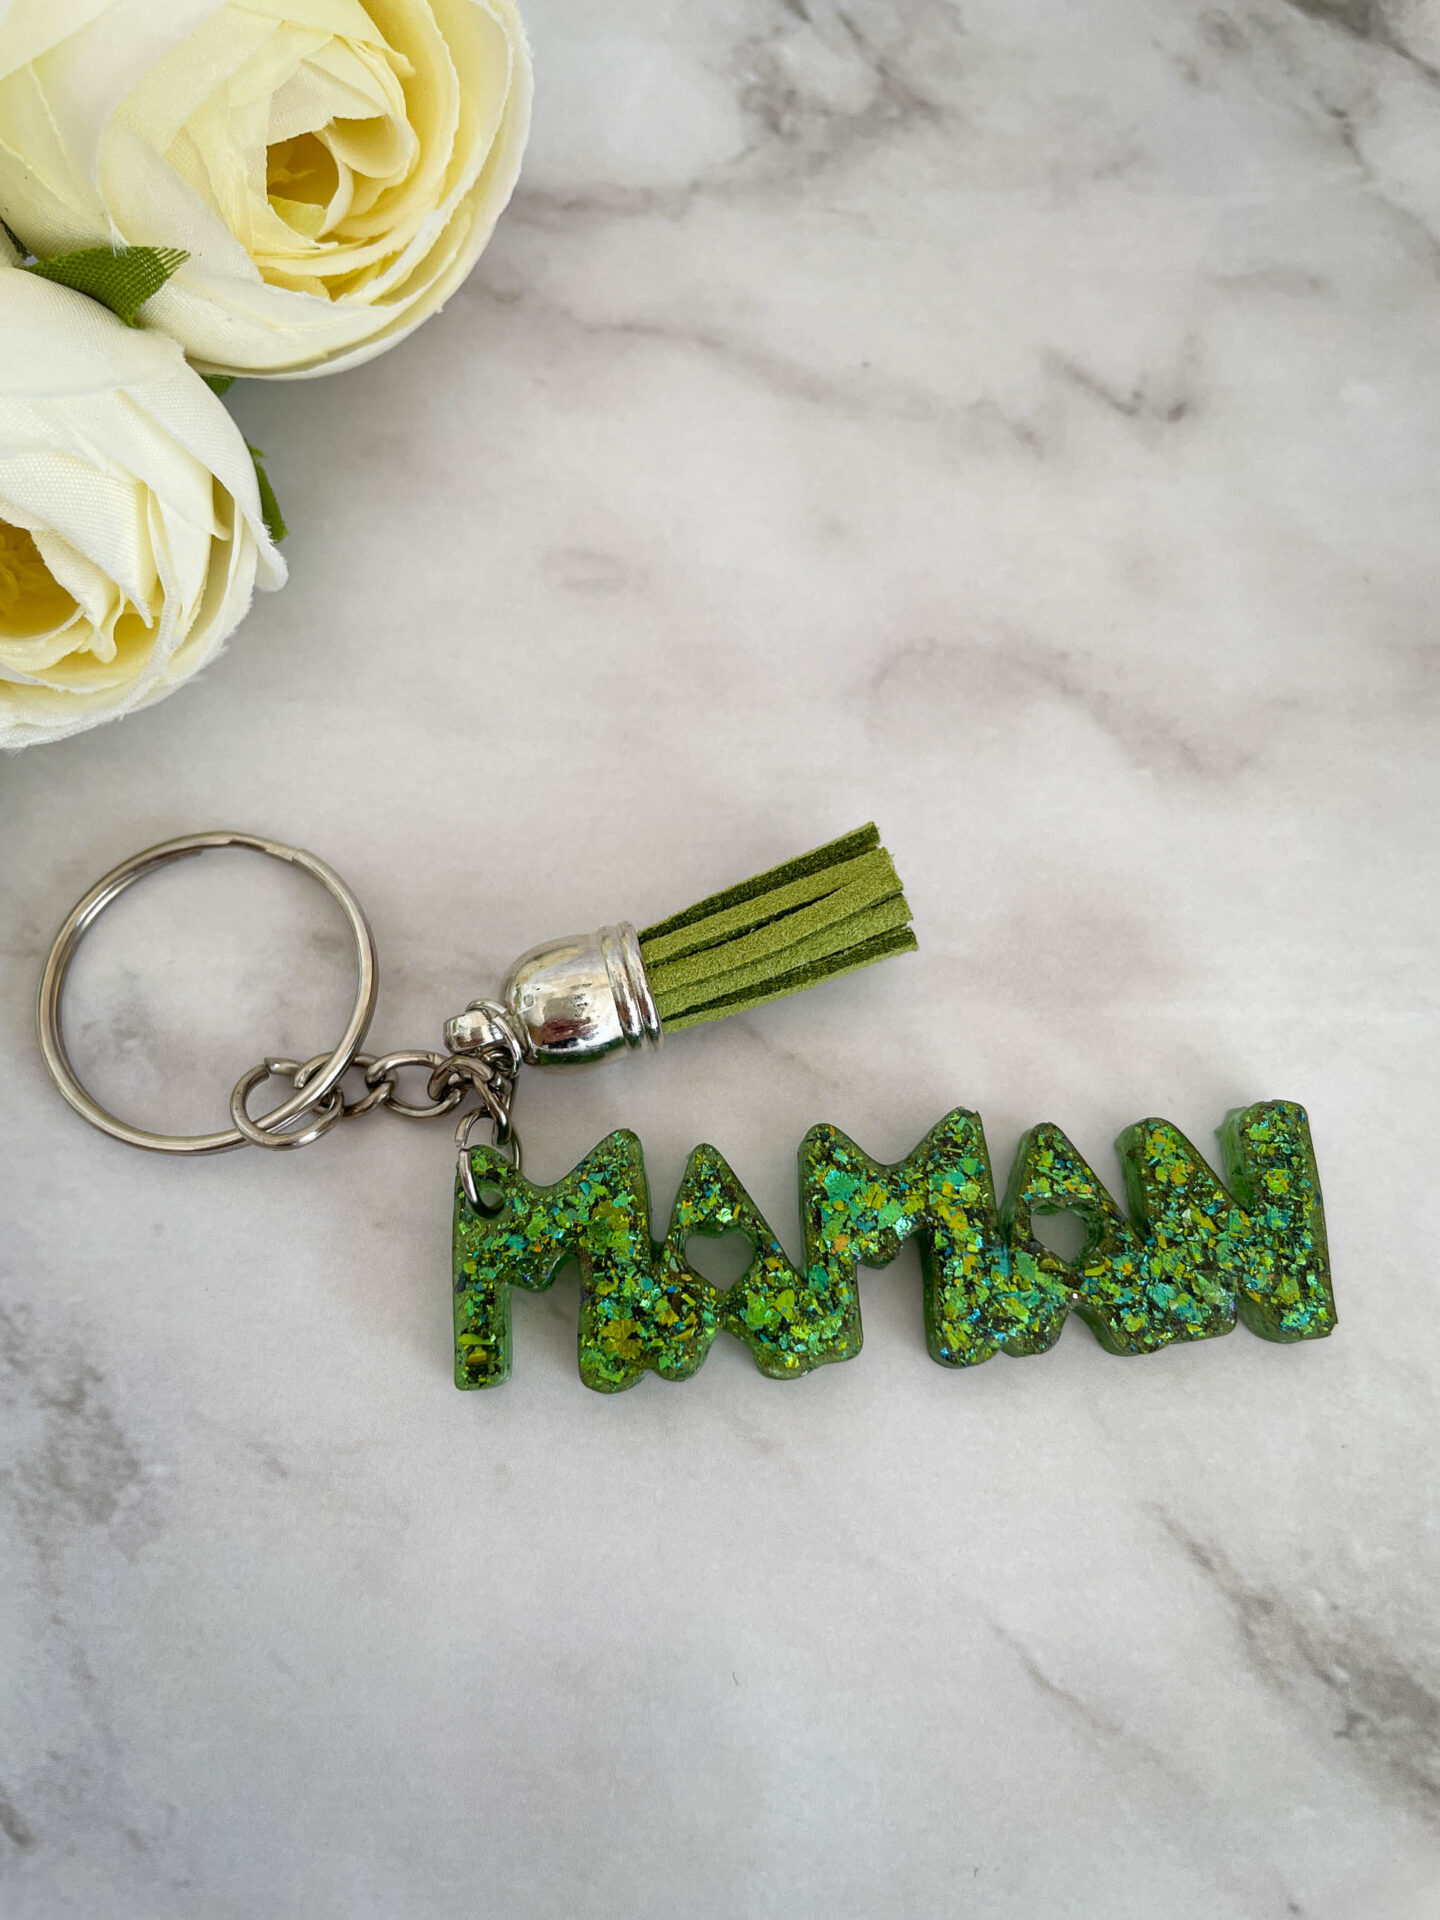 Porte-clé mot - MAMAN - vert paillette - Boutique en ligne d'idées cadeau et de décoration